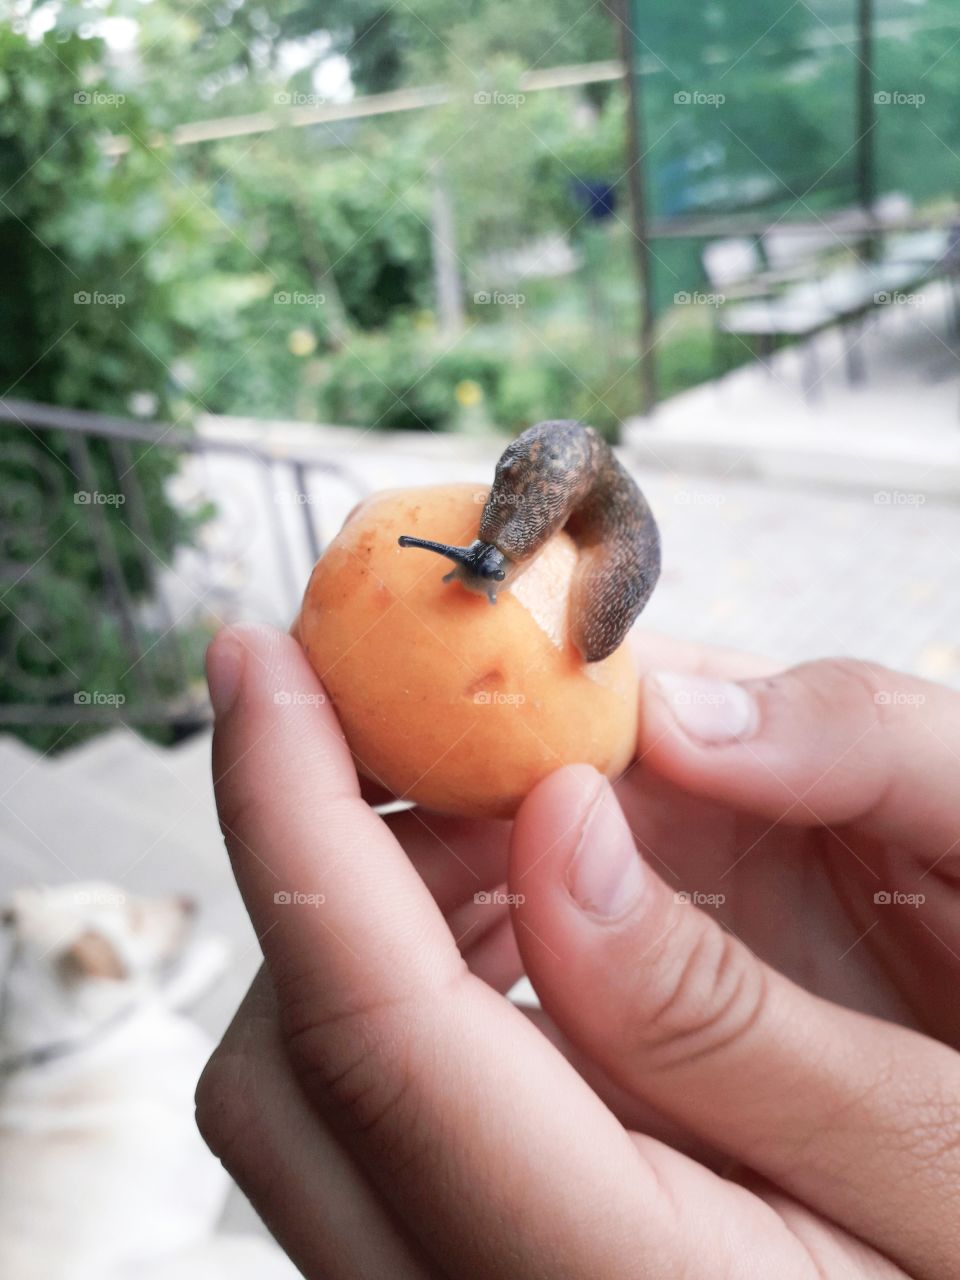 slug on apricot